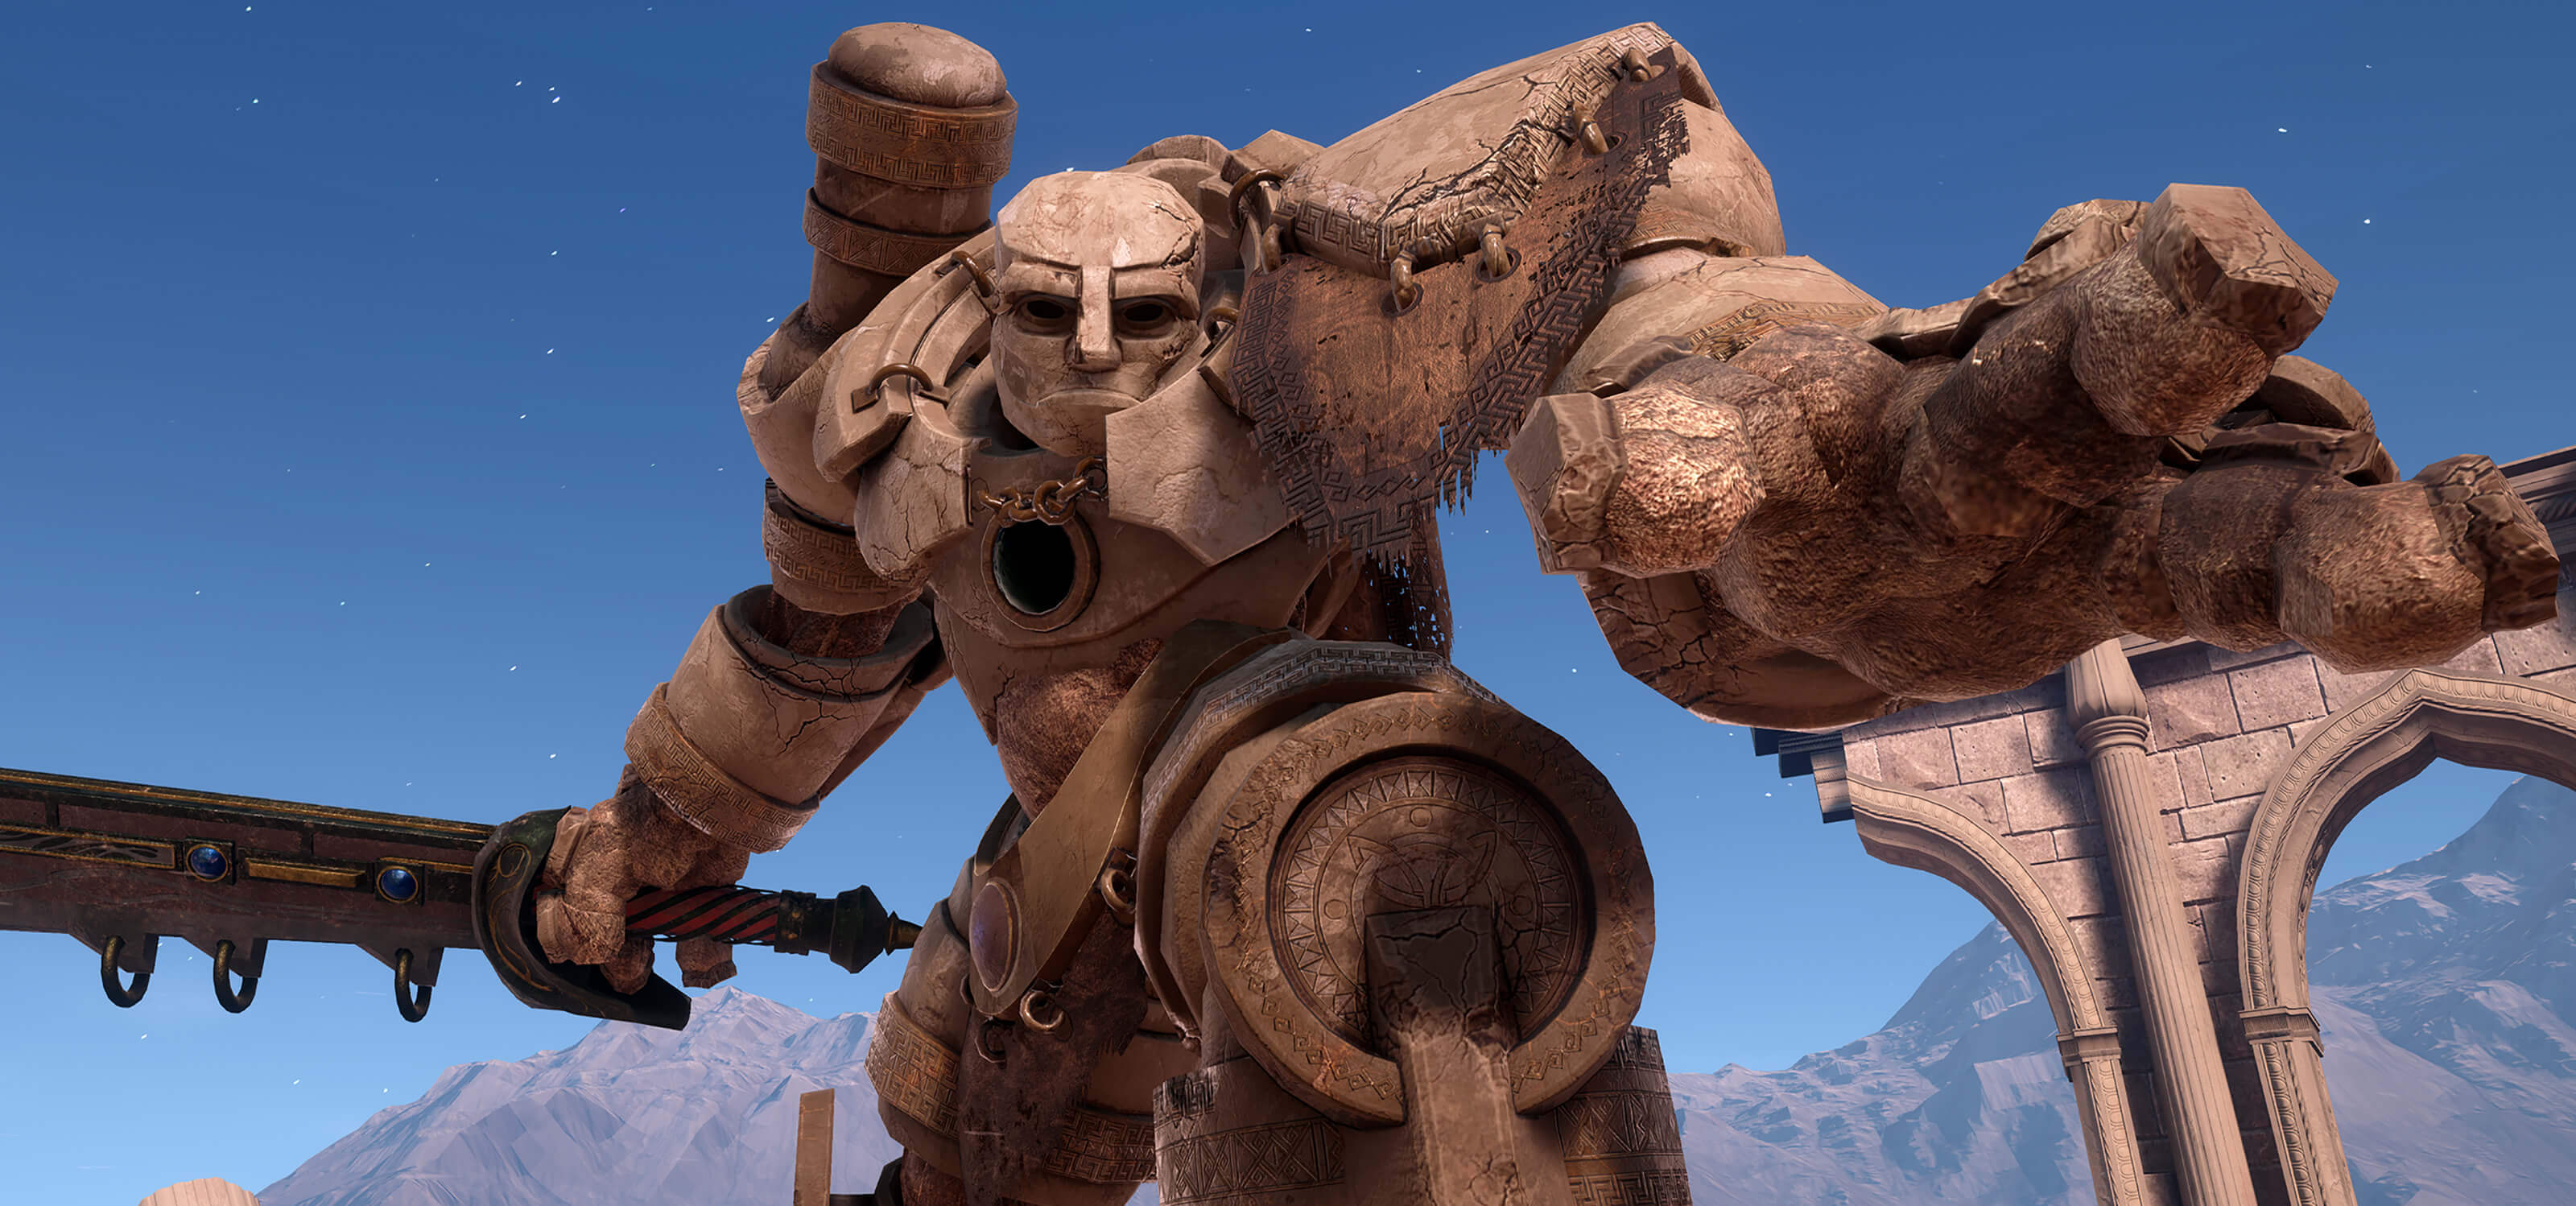 Screenshot of a huge stone creature called a golem wielding a sword